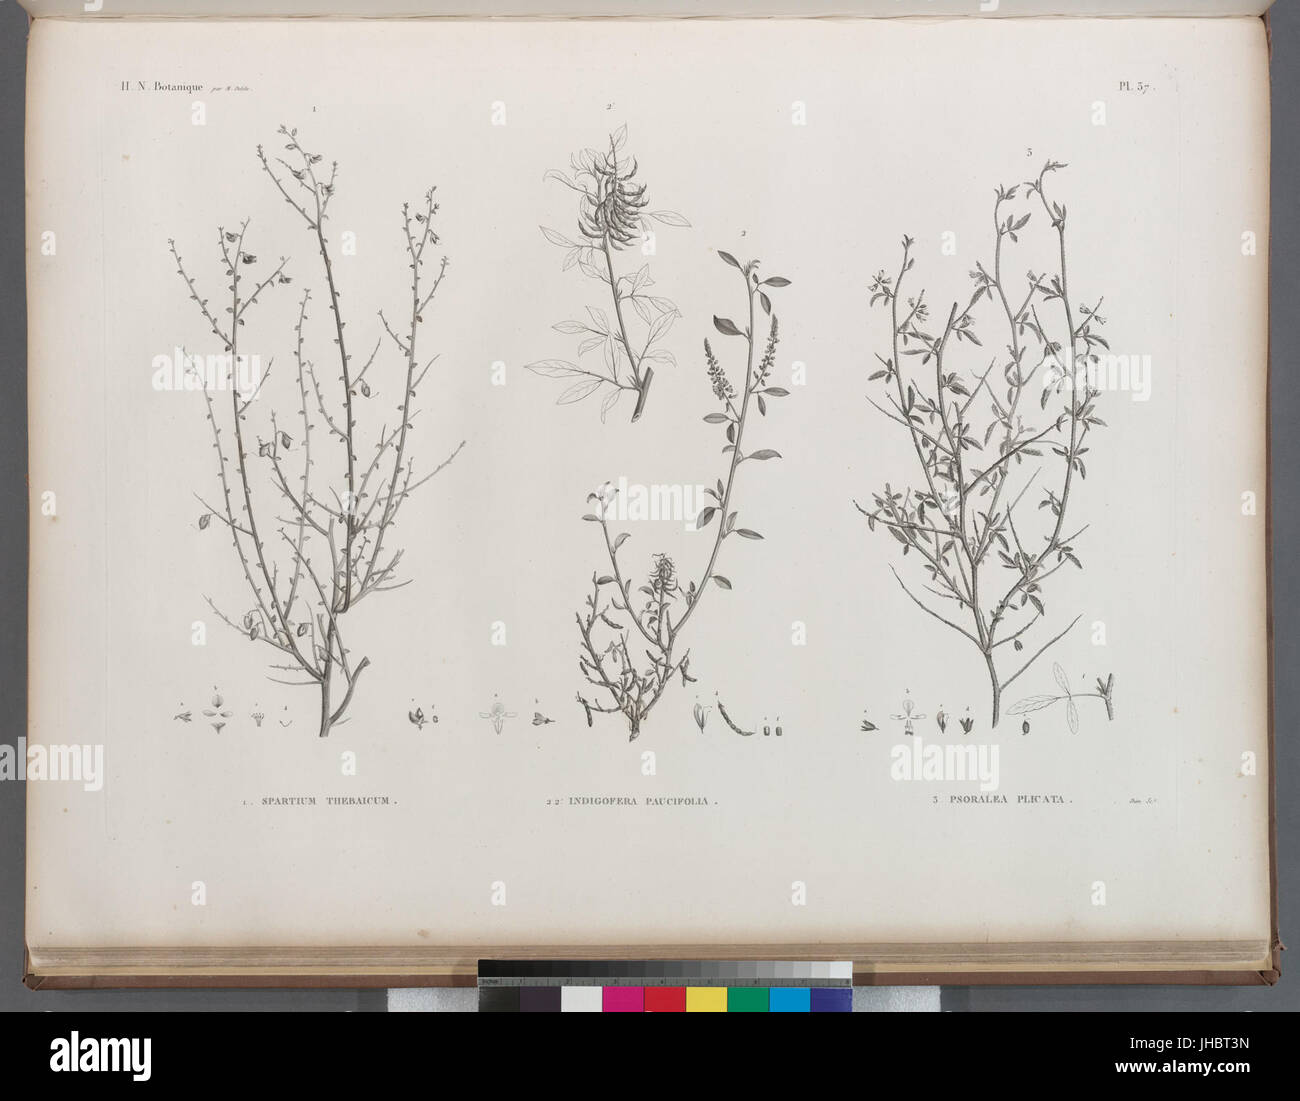 Botanique. 1. Spartium thebaicum; 2.2'. Indigofera paucifolia; 3. Psoralea plicata (NYPL b14212718-1268669) Stock Photo